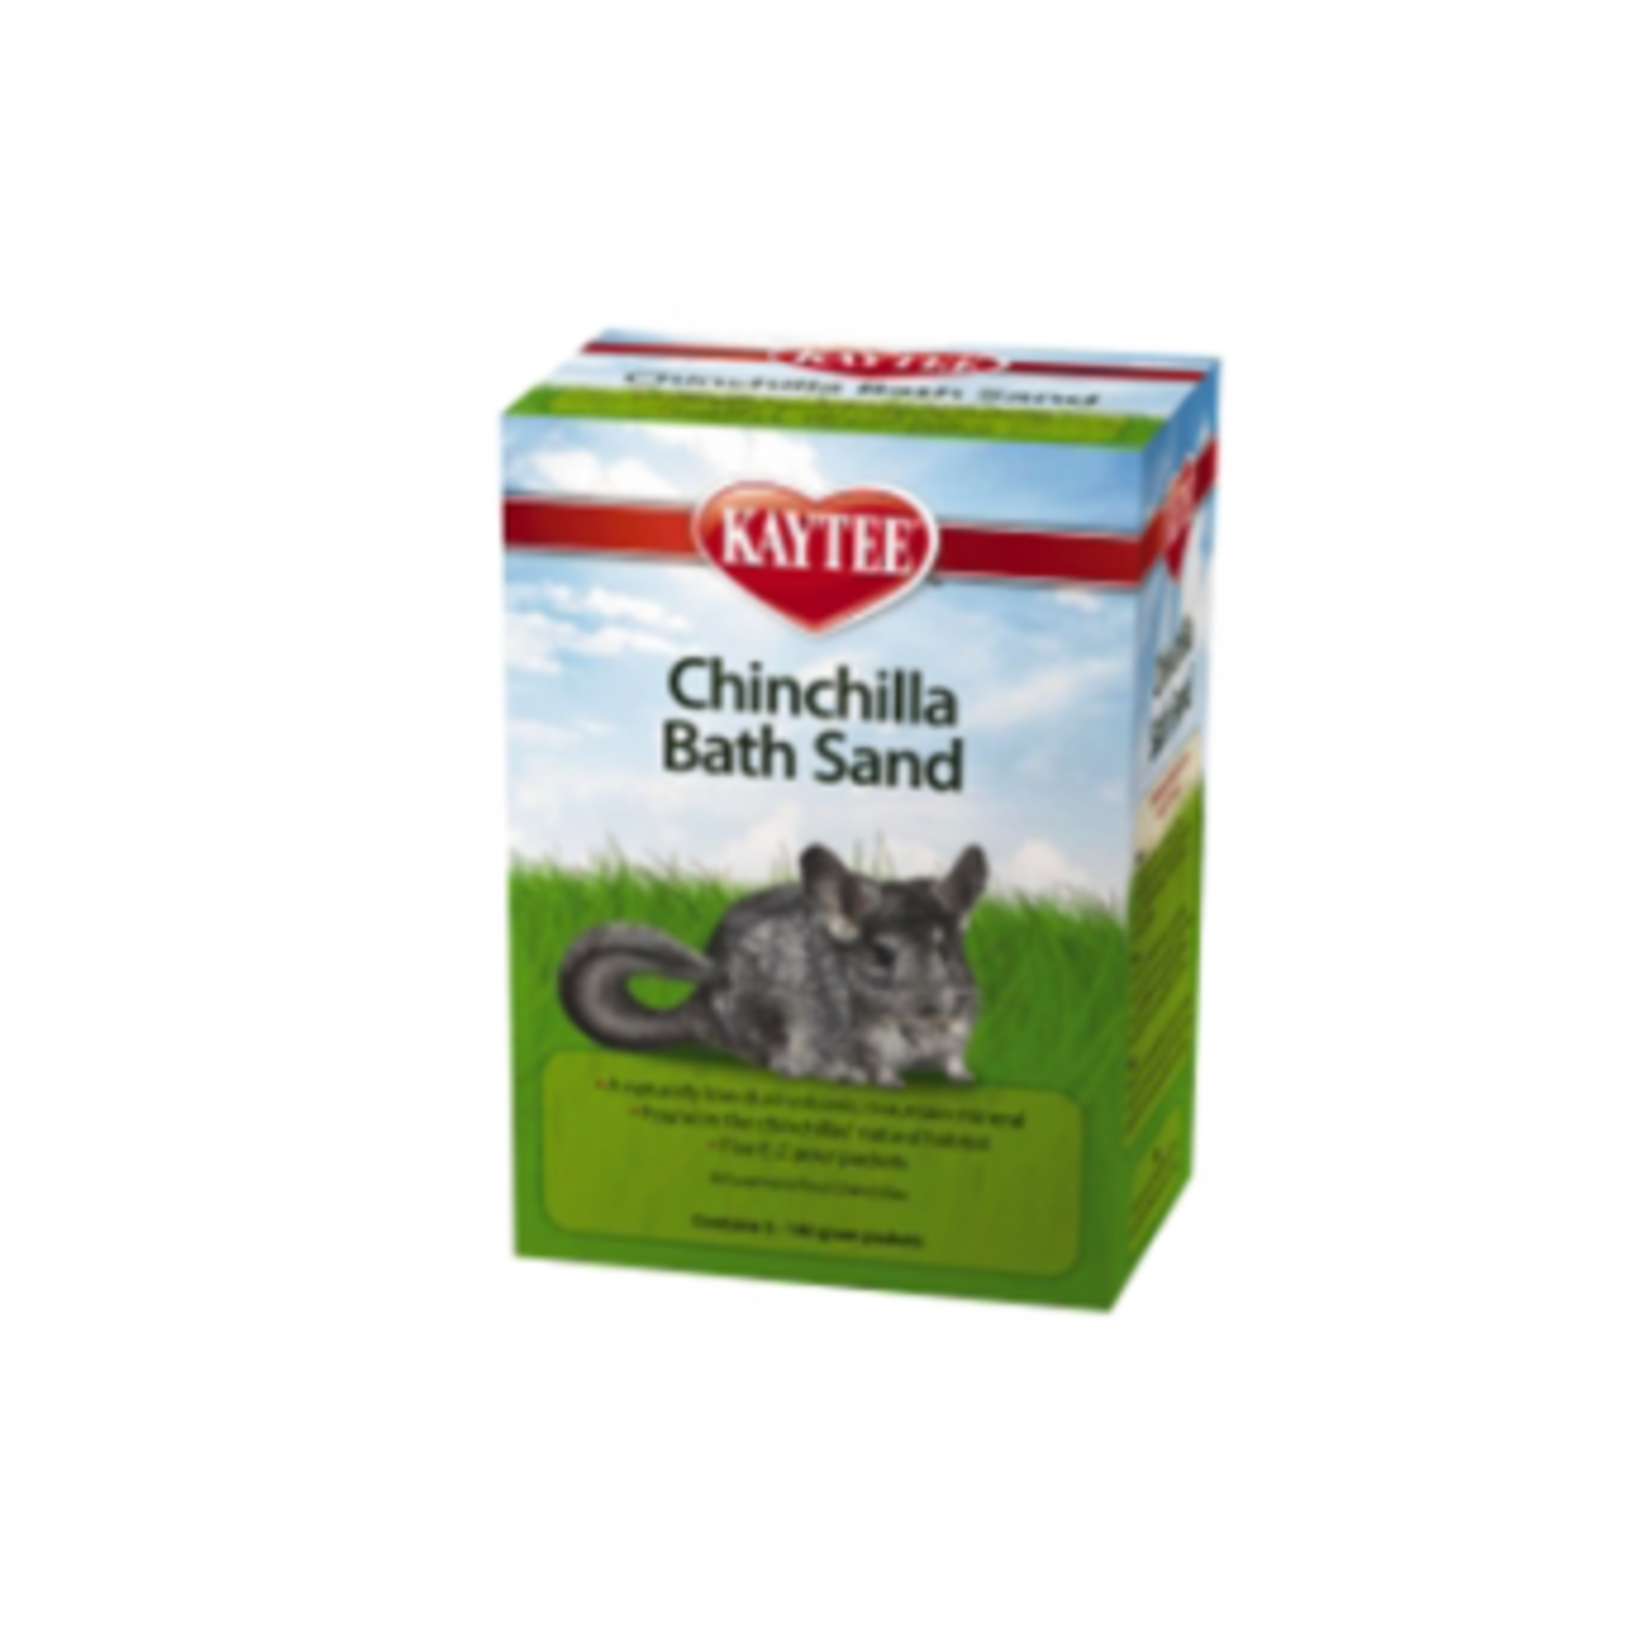 Kaytee Chinchilla - Bath Sand - Pack of 5 of 140 g